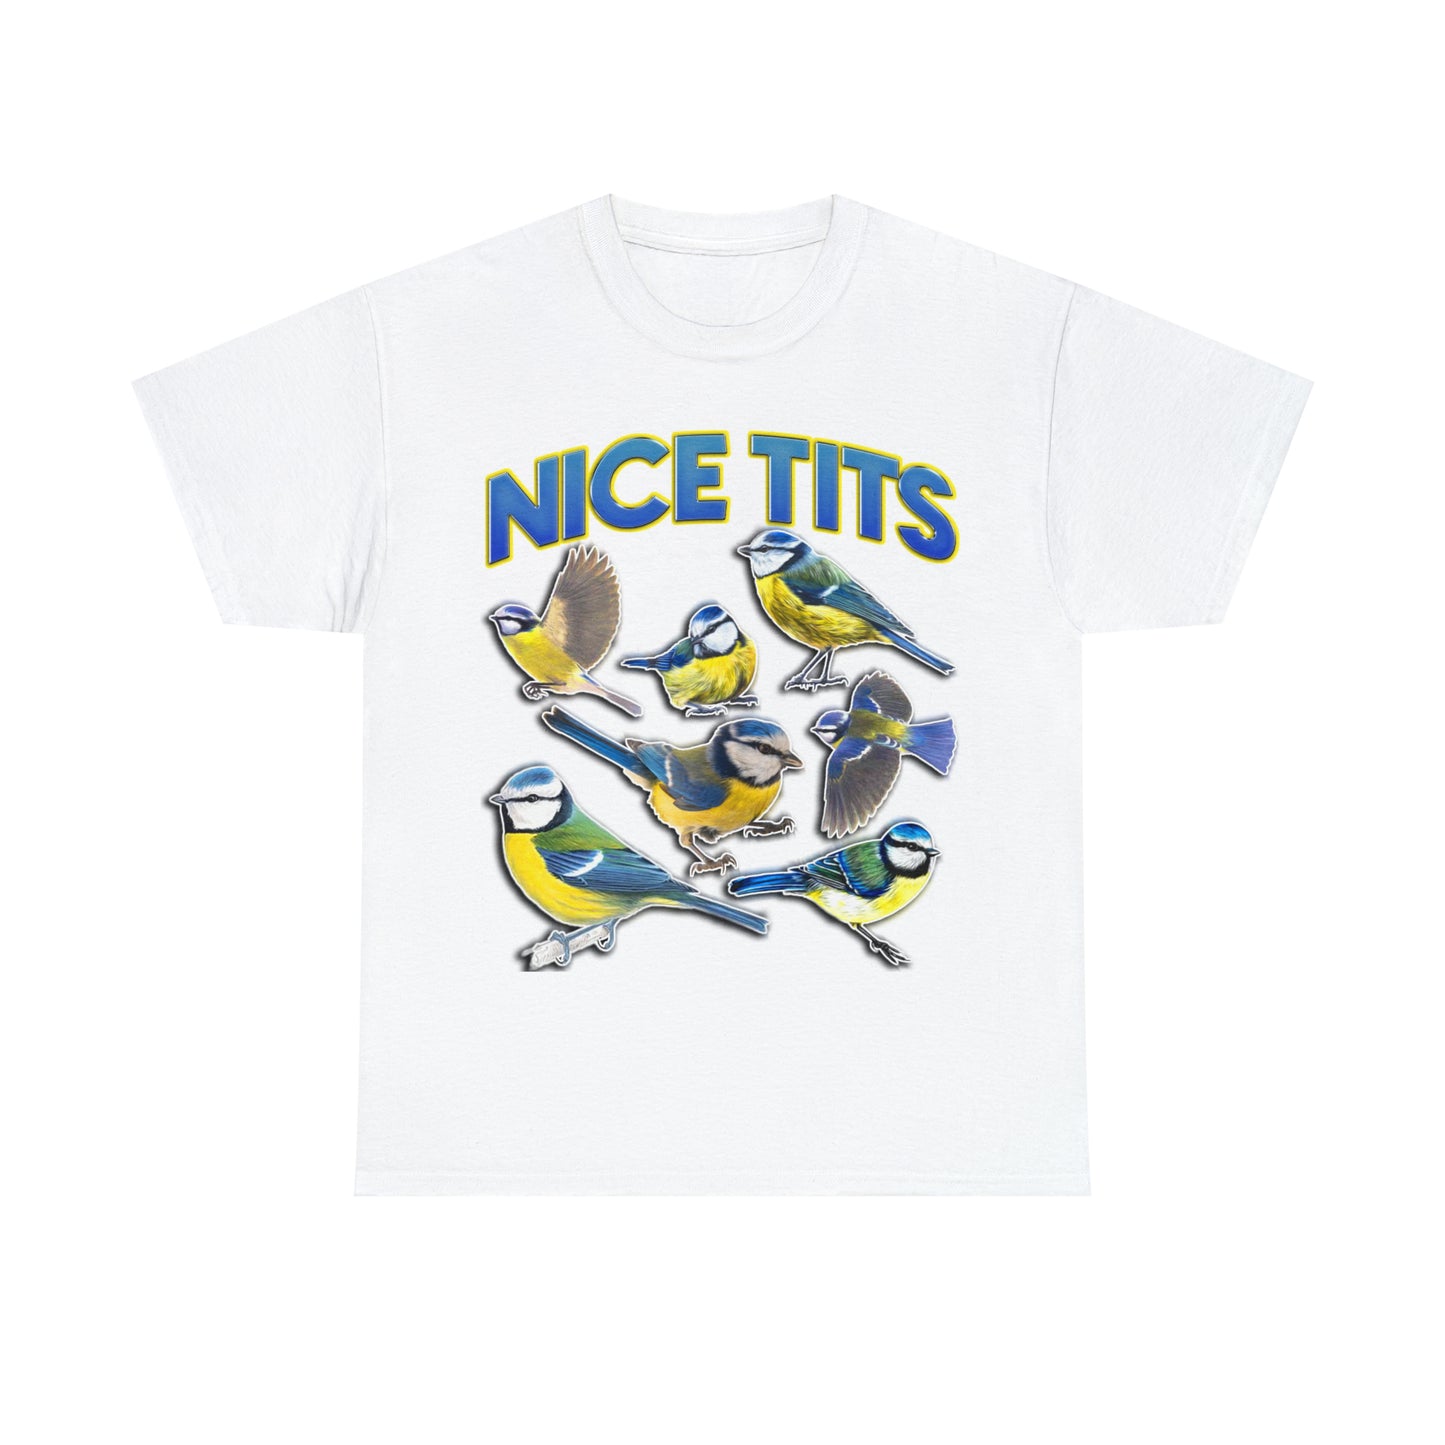 Nice Tits T-Shirt